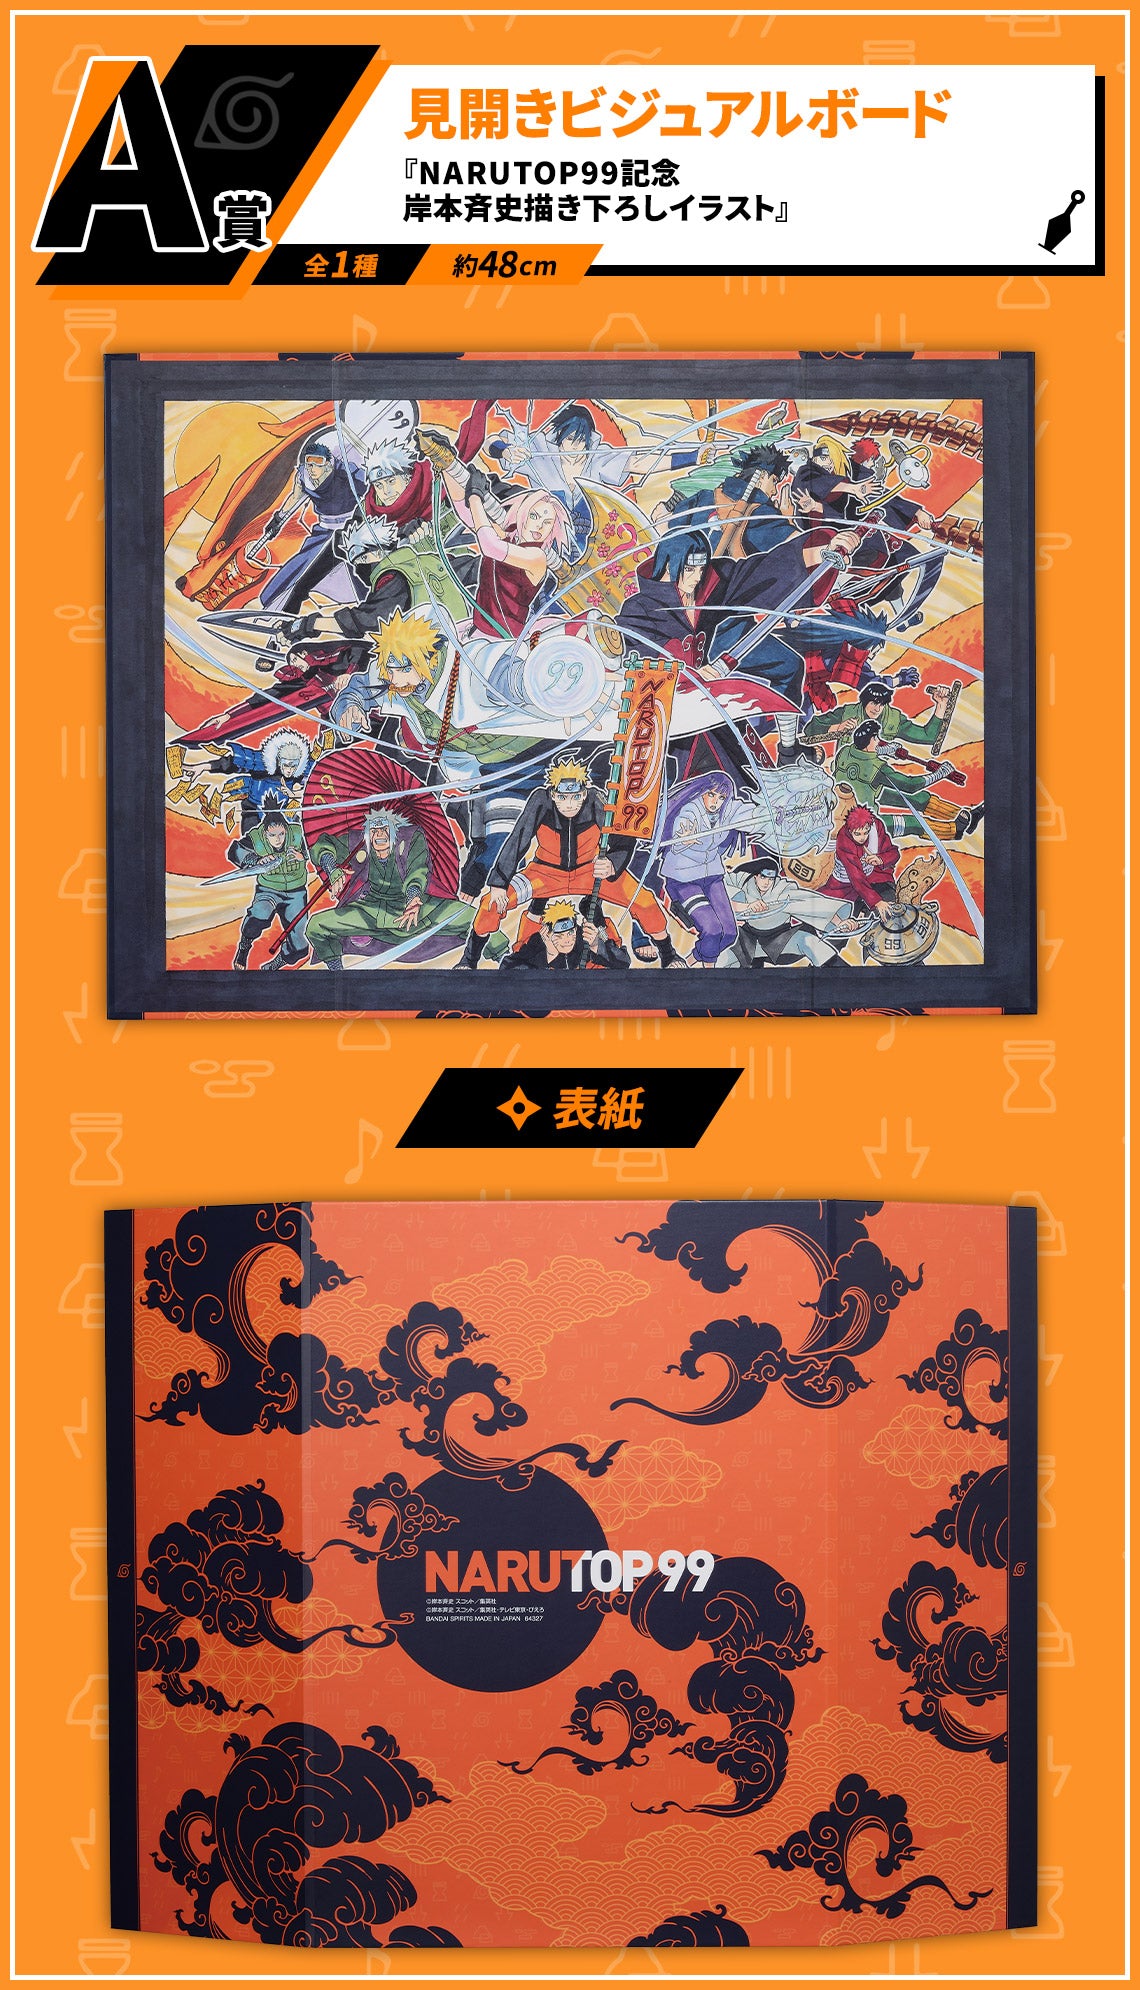 Ichiban Kuji NARUTOP99 A Prize Spread Visual Board